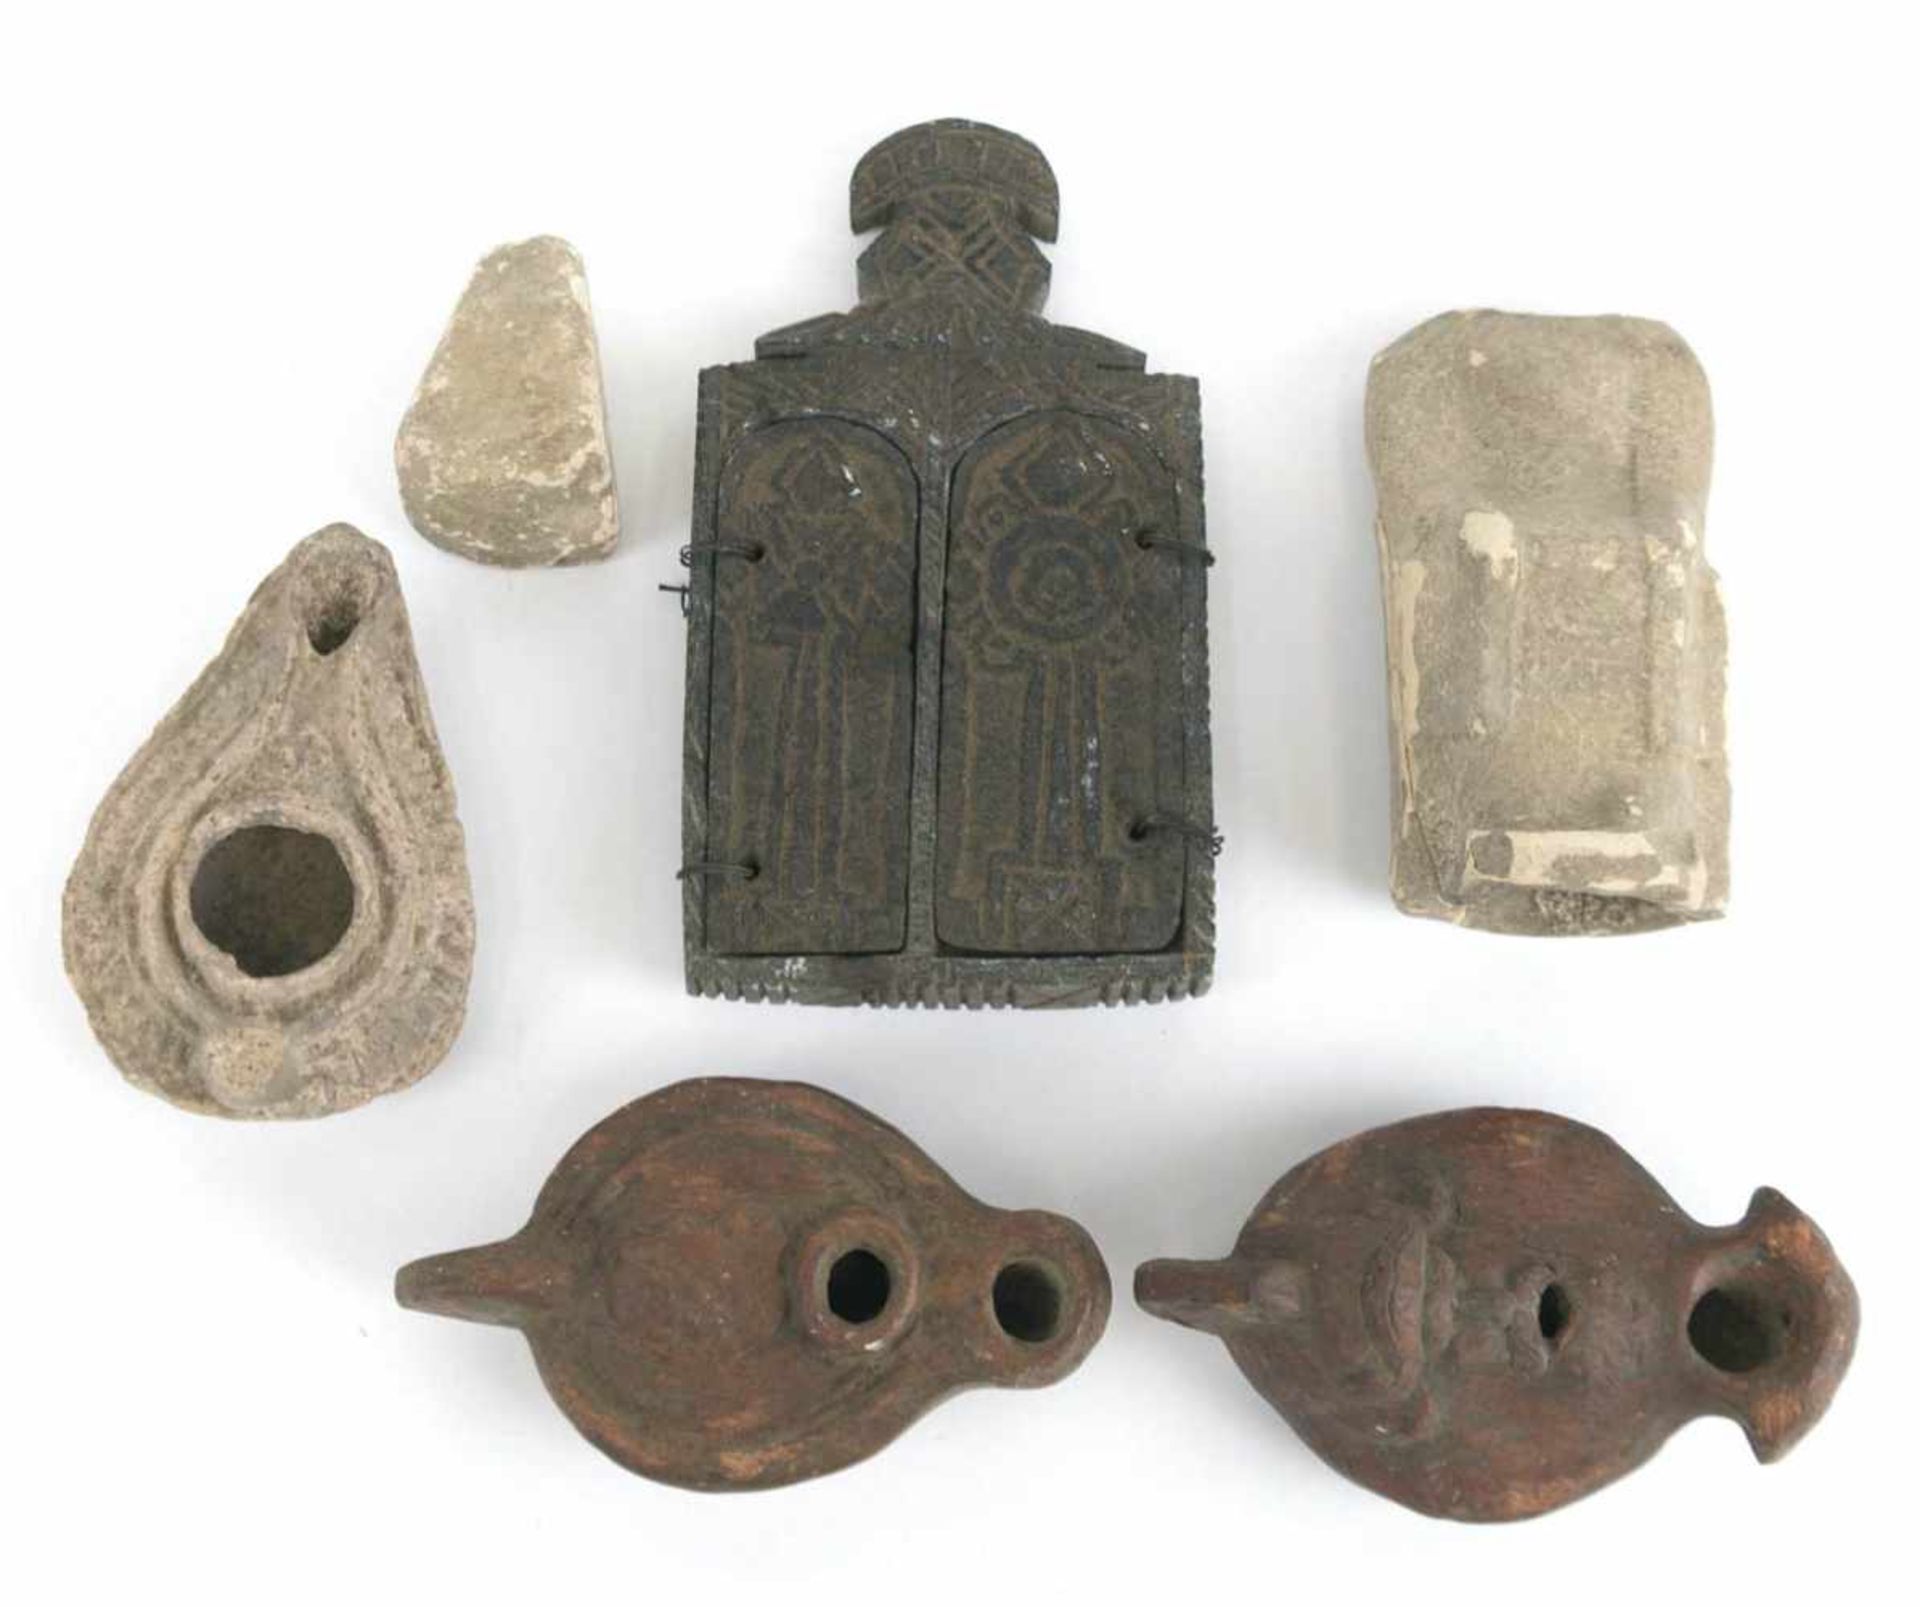 Konvolut von 6 archäologischen Fundstücken, Ton bzw. Sandstein, dabei 3 Öllampen, sitzendeFigur ohne